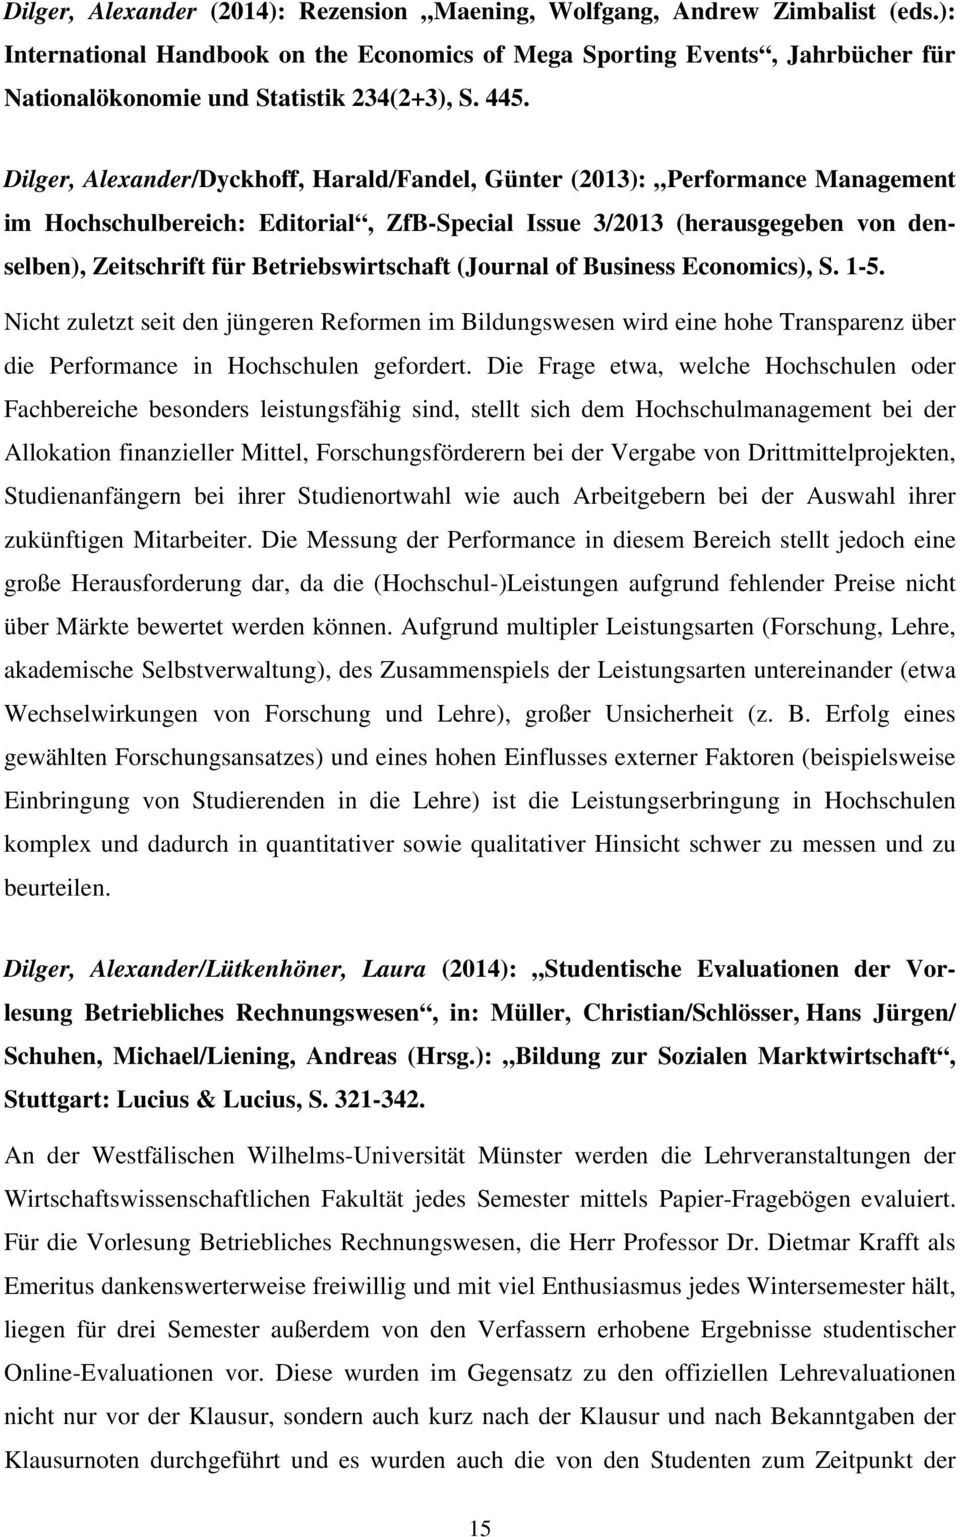 Dilger, Alexander/Dyckhoff, Harald/Fandel, Günter (2013): Performance Management im Hochschulbereich: Editorial, ZfB-Special Issue 3/2013 (herausgegeben von denselben), Zeitschrift für